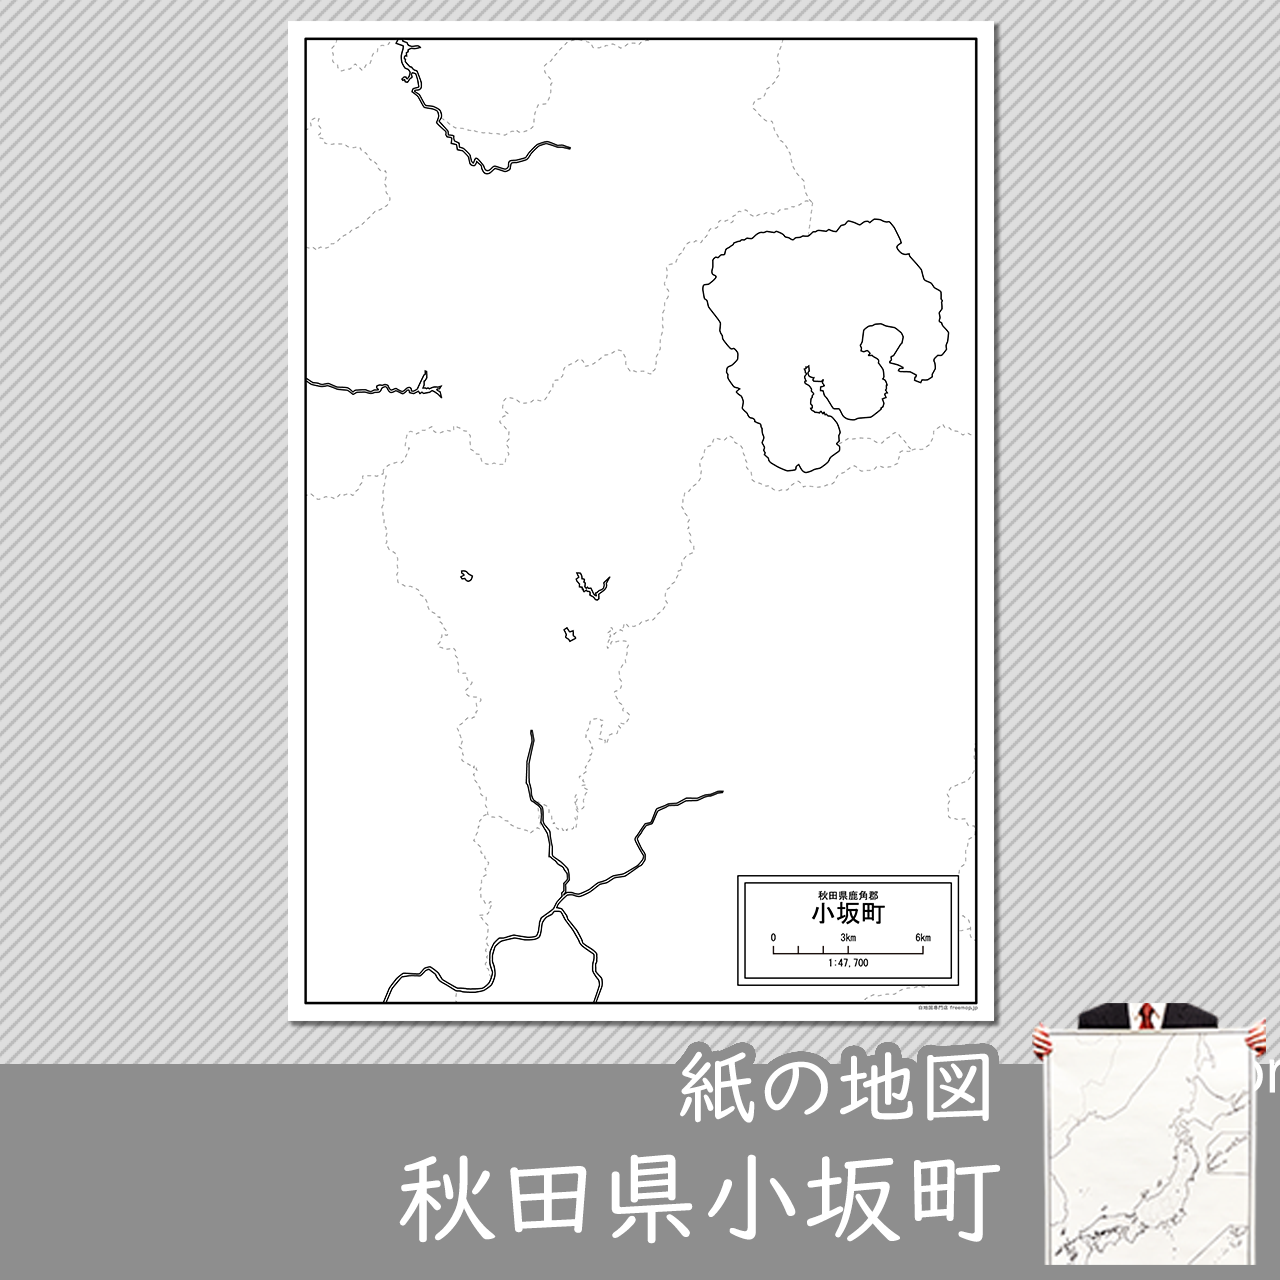 小坂町の紙の白地図のサムネイル